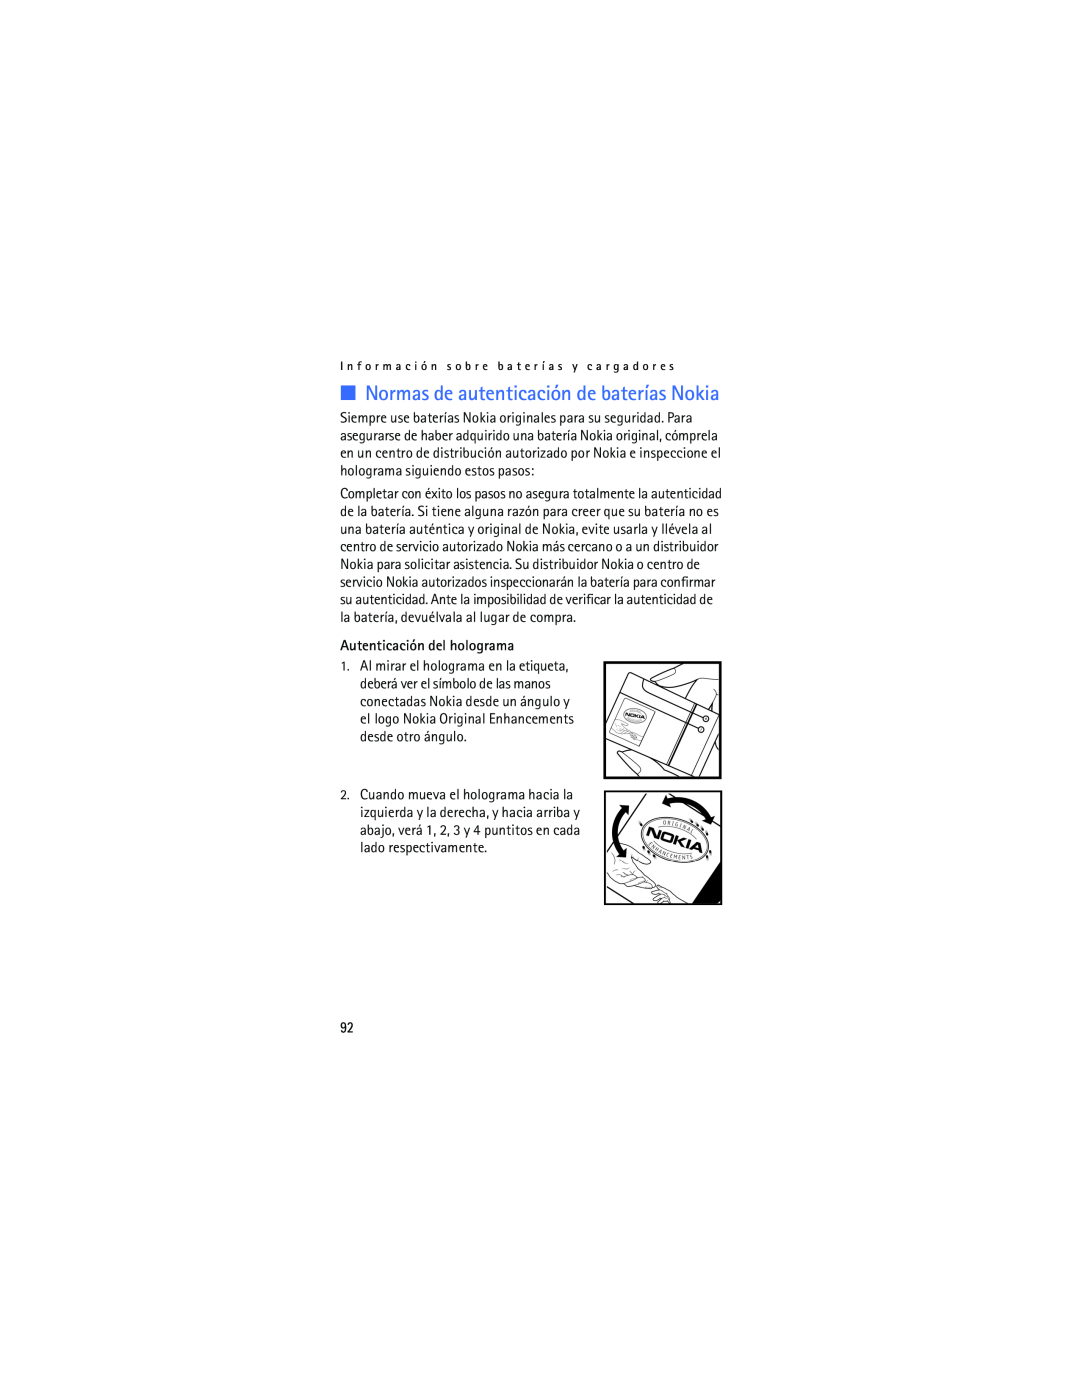 Verizon 2605 manual Autenticación del holograma, Normas de autenticación de baterías Nokia 